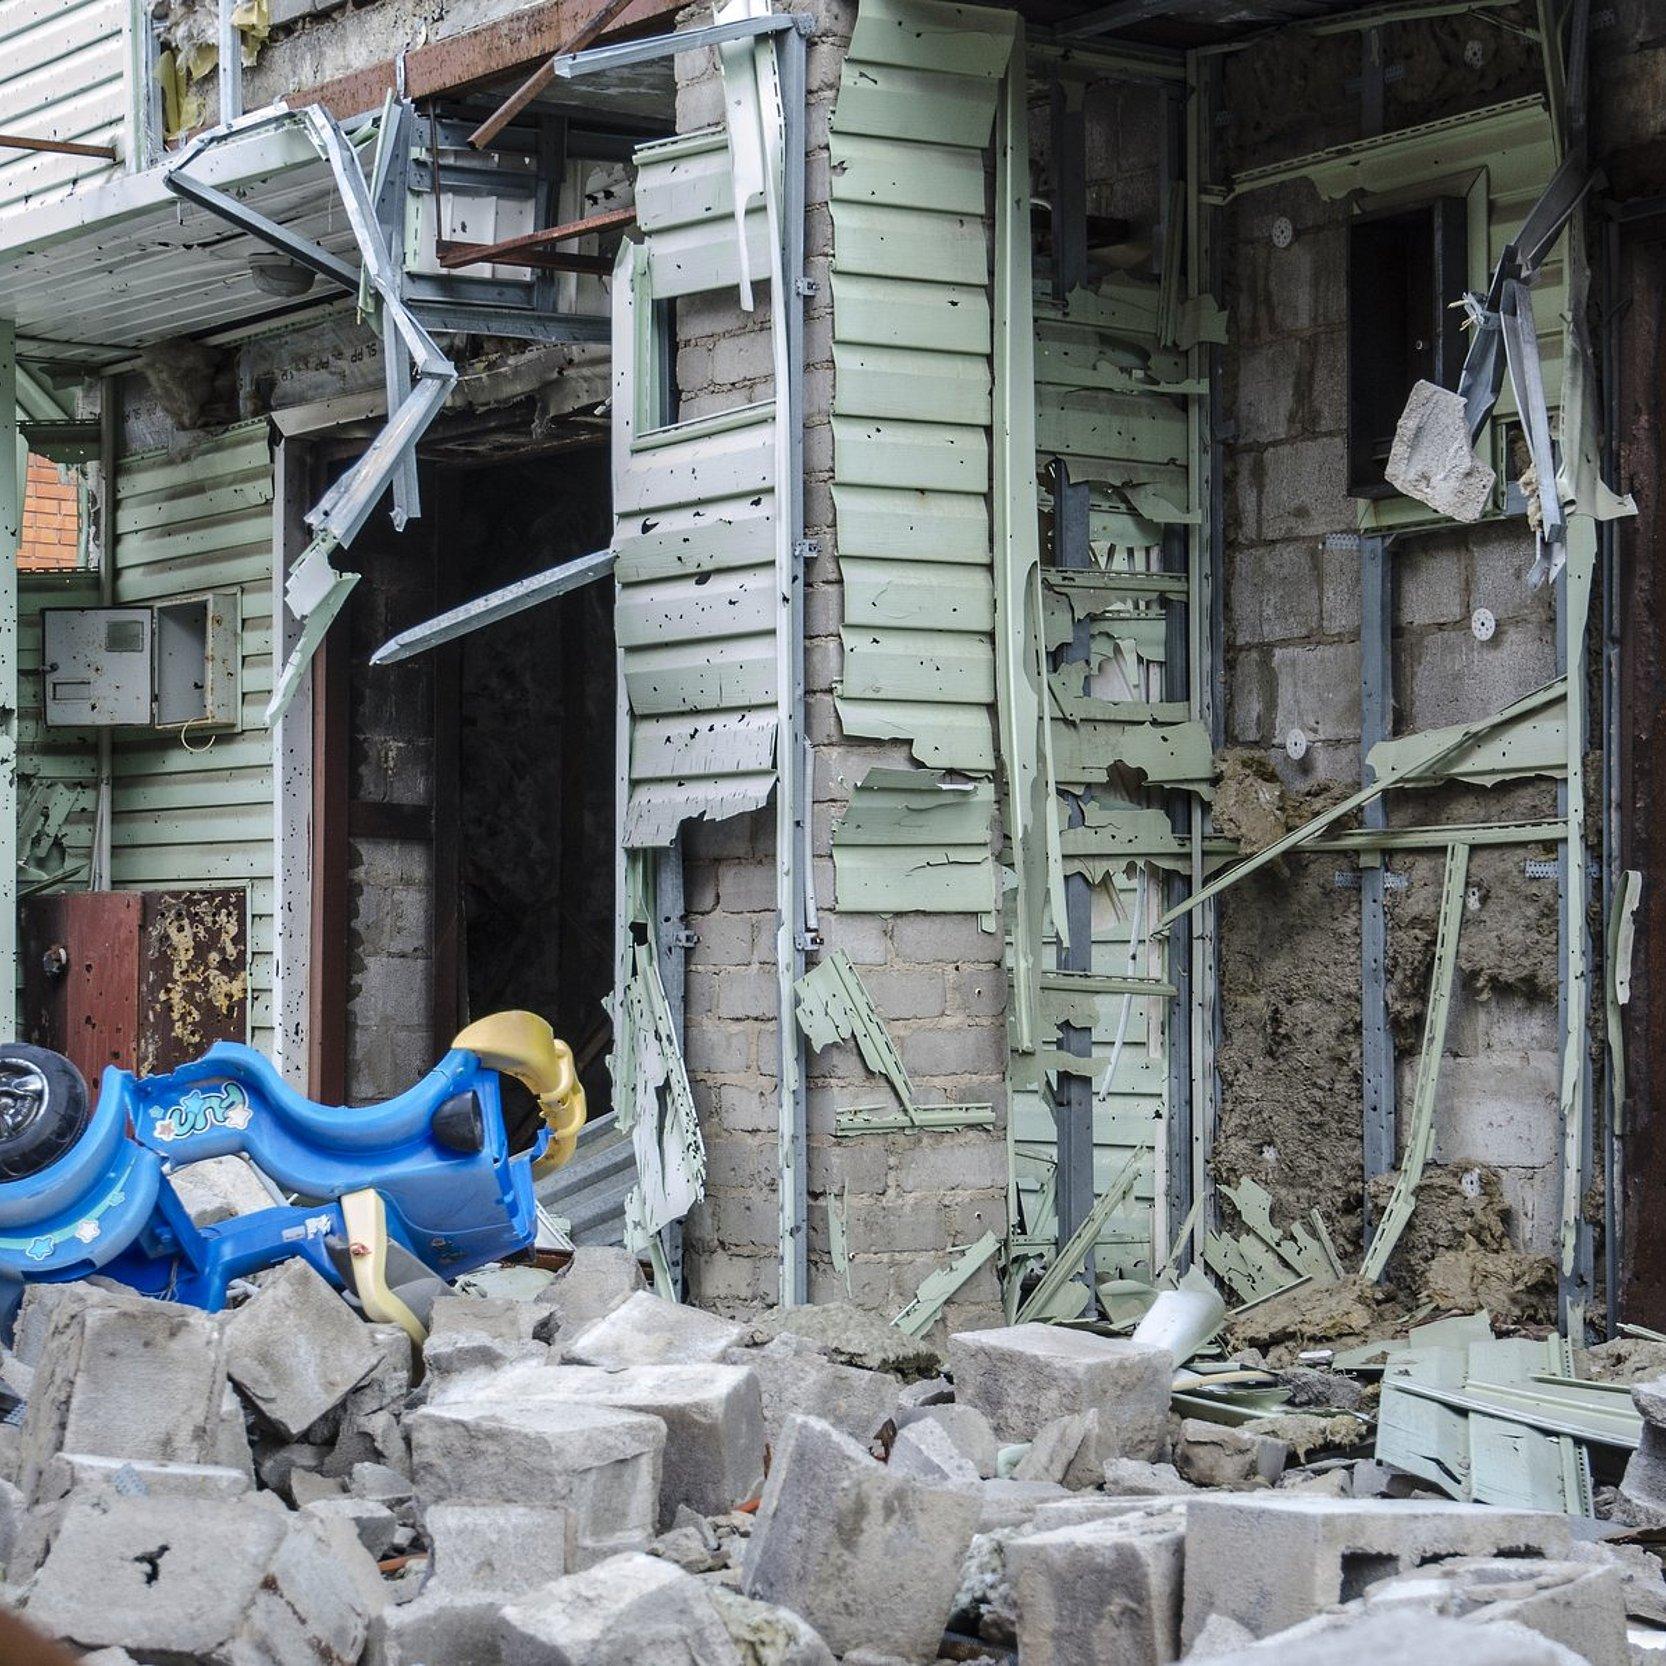 Krieg in der Ukraine. Ein zerstörtes Haus und davor ein Bobbycar für Kinder. Siedlung Shyrokyne, Donezk. September 2018.